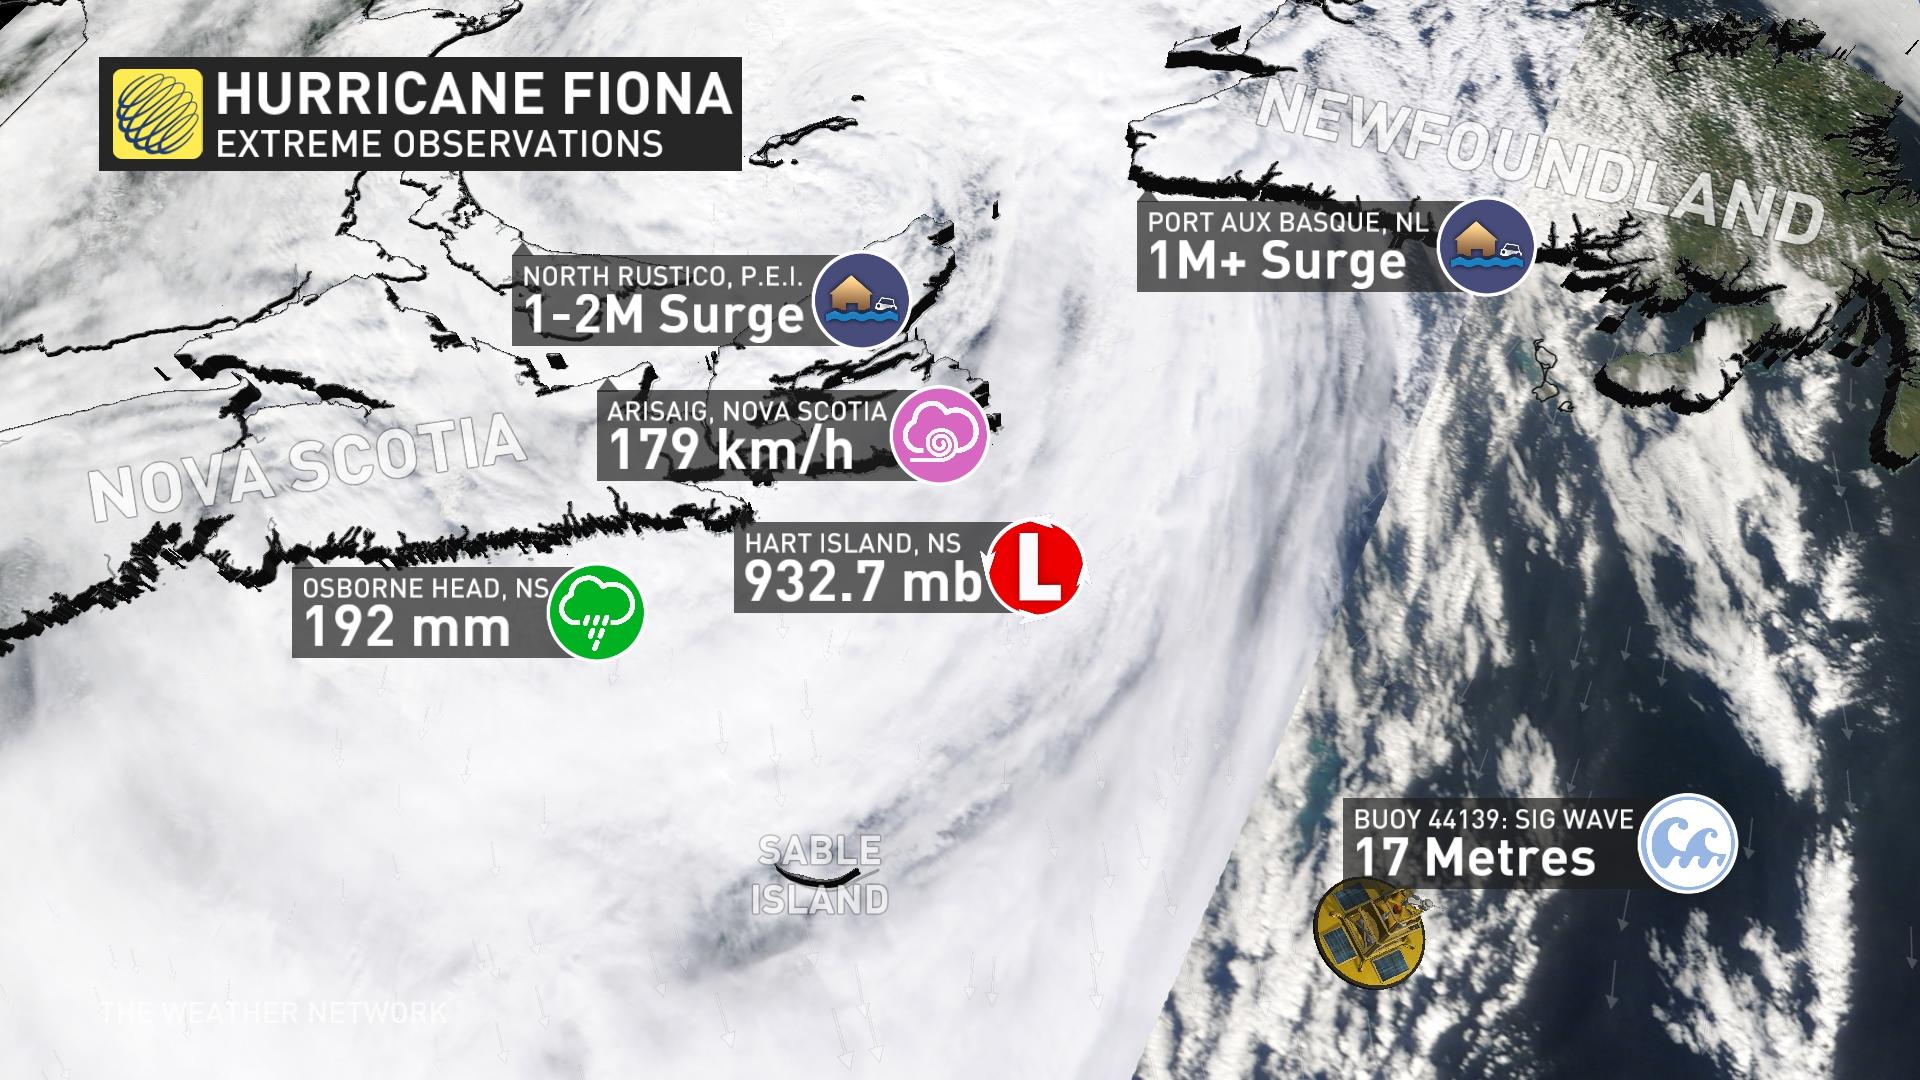 Hurricane Fiona Summary